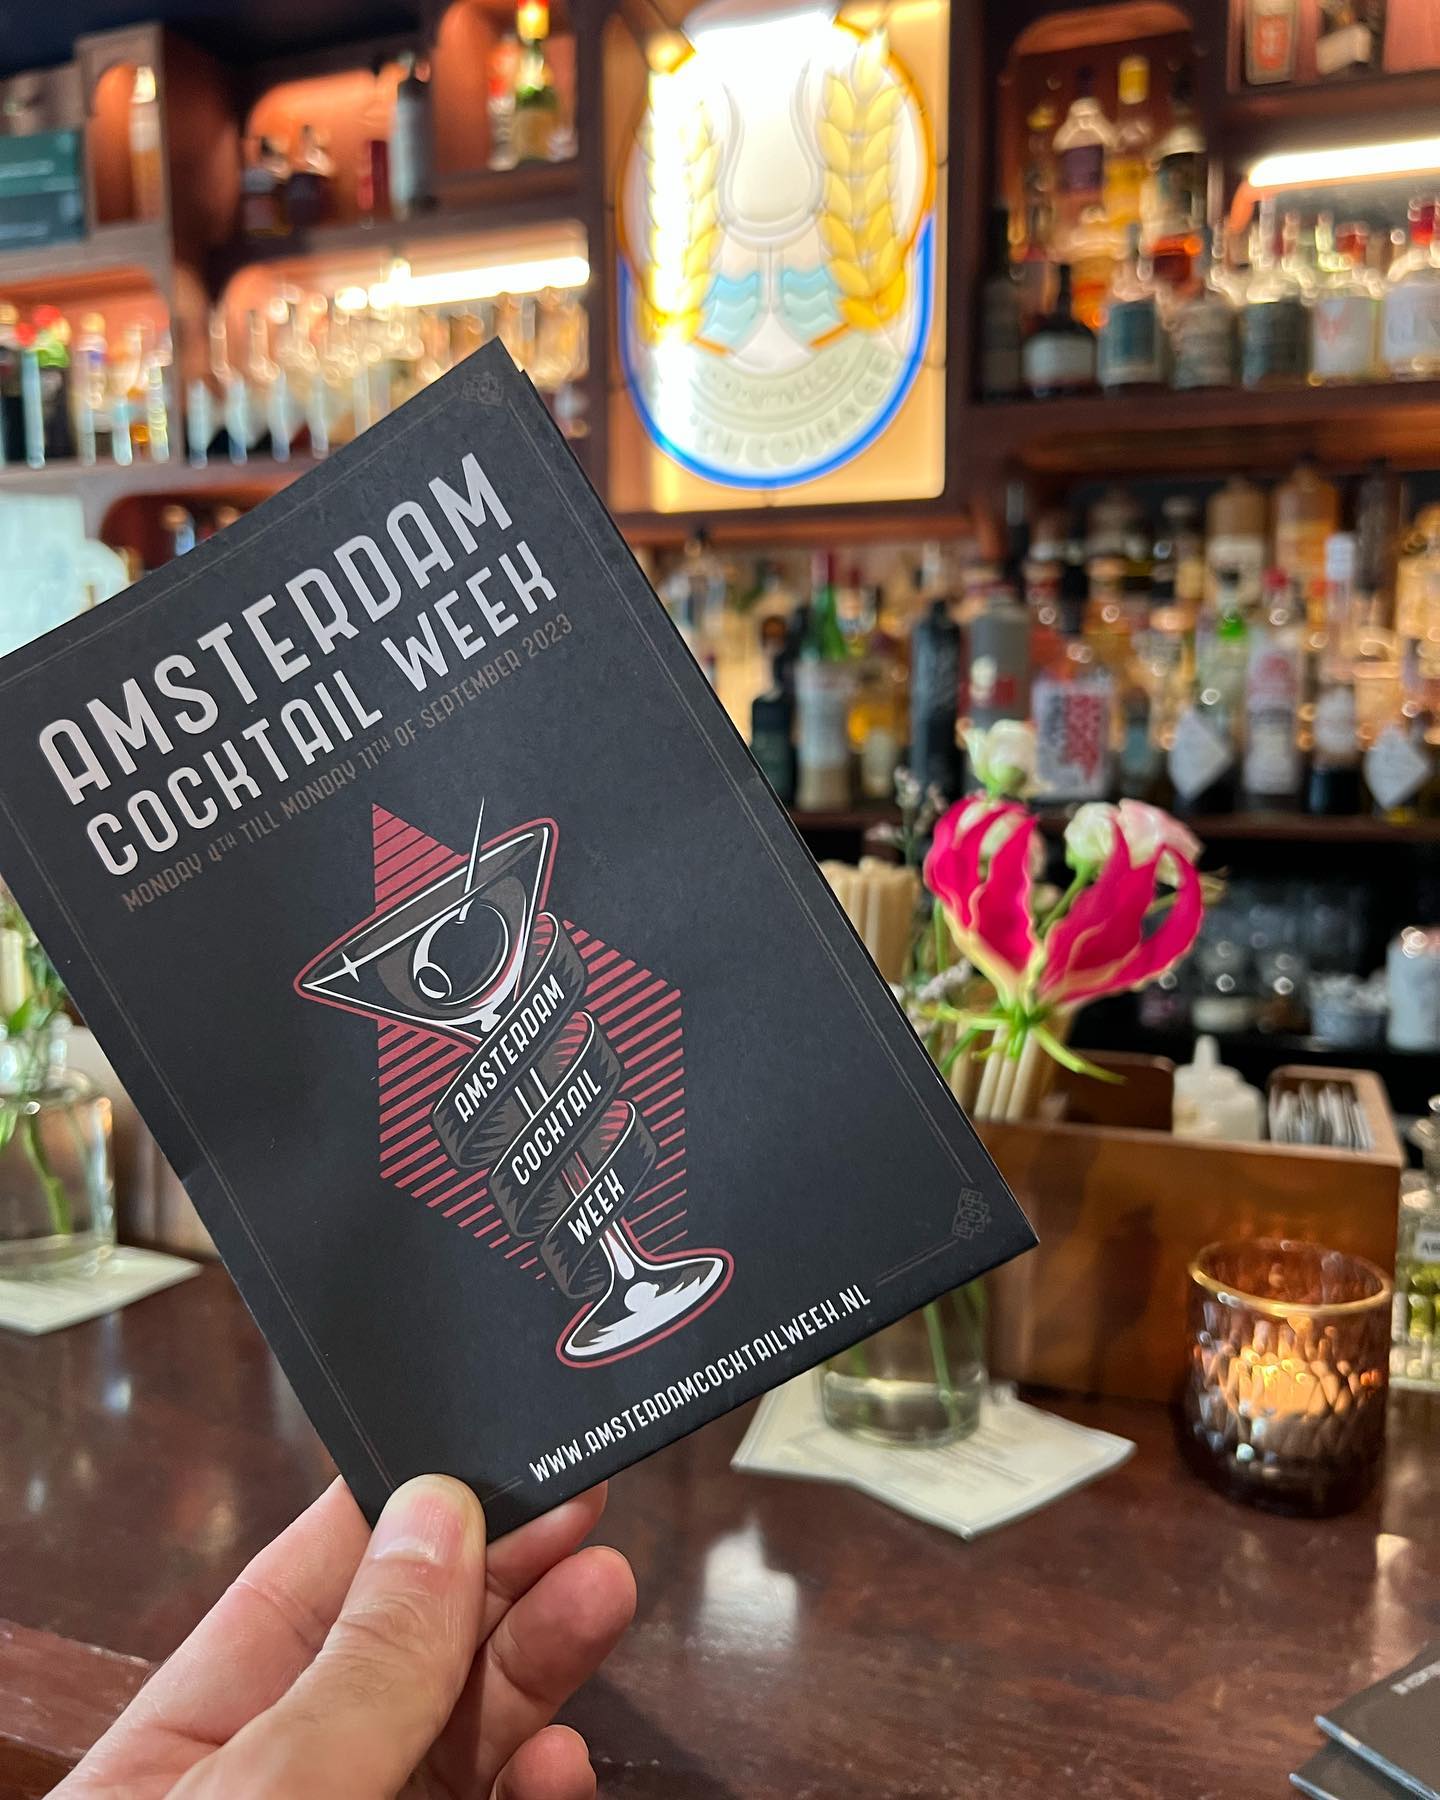 Amsterdam Cocktail Week